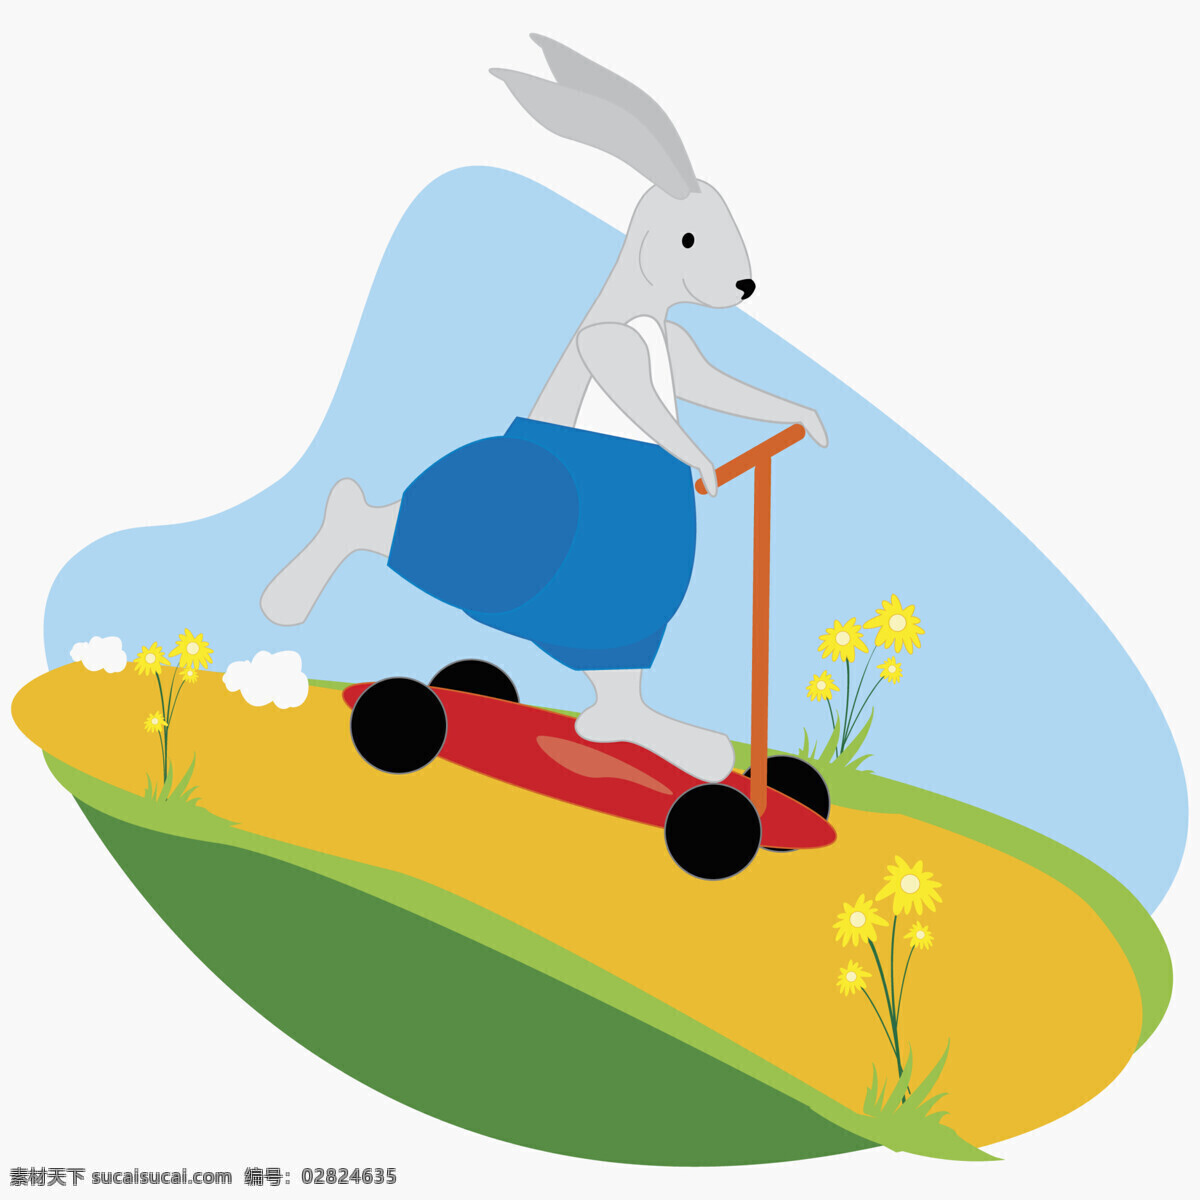 插画 动漫动画 动物 卡通 卡通兔 可爱 漫画 兔 设计素材 模板下载 小动物 兔子 滑滑车 插画集